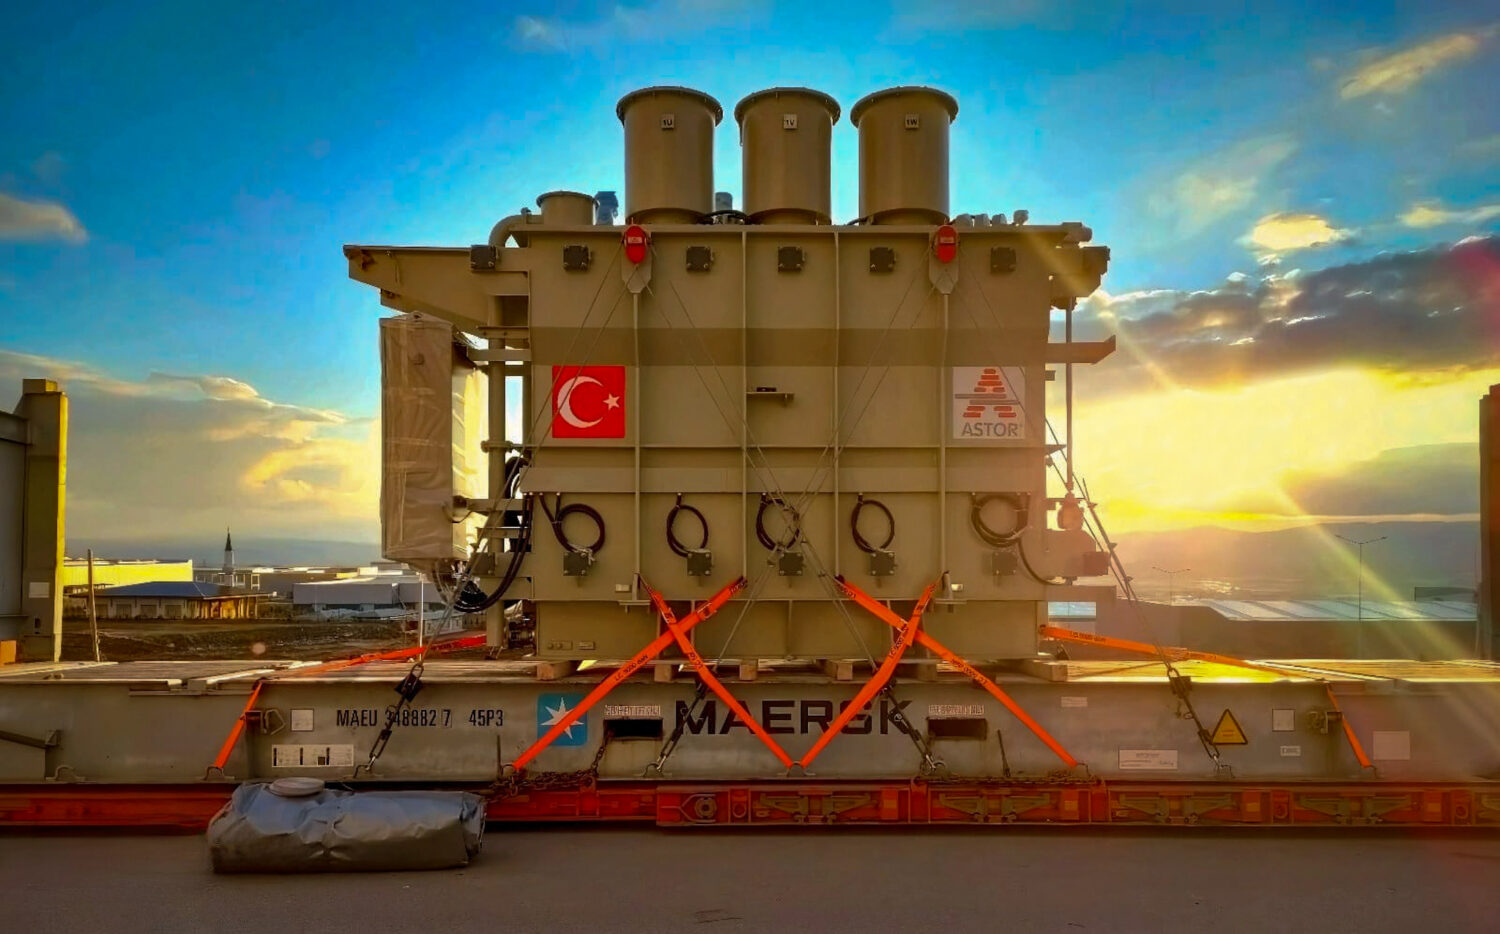 OIA Estambul transportó dos conjuntos de transformadores, cada uno de los cuales pesaba 42 toneladas, y entregó los artículos en un plazo muy breve y sin ningún problema. 